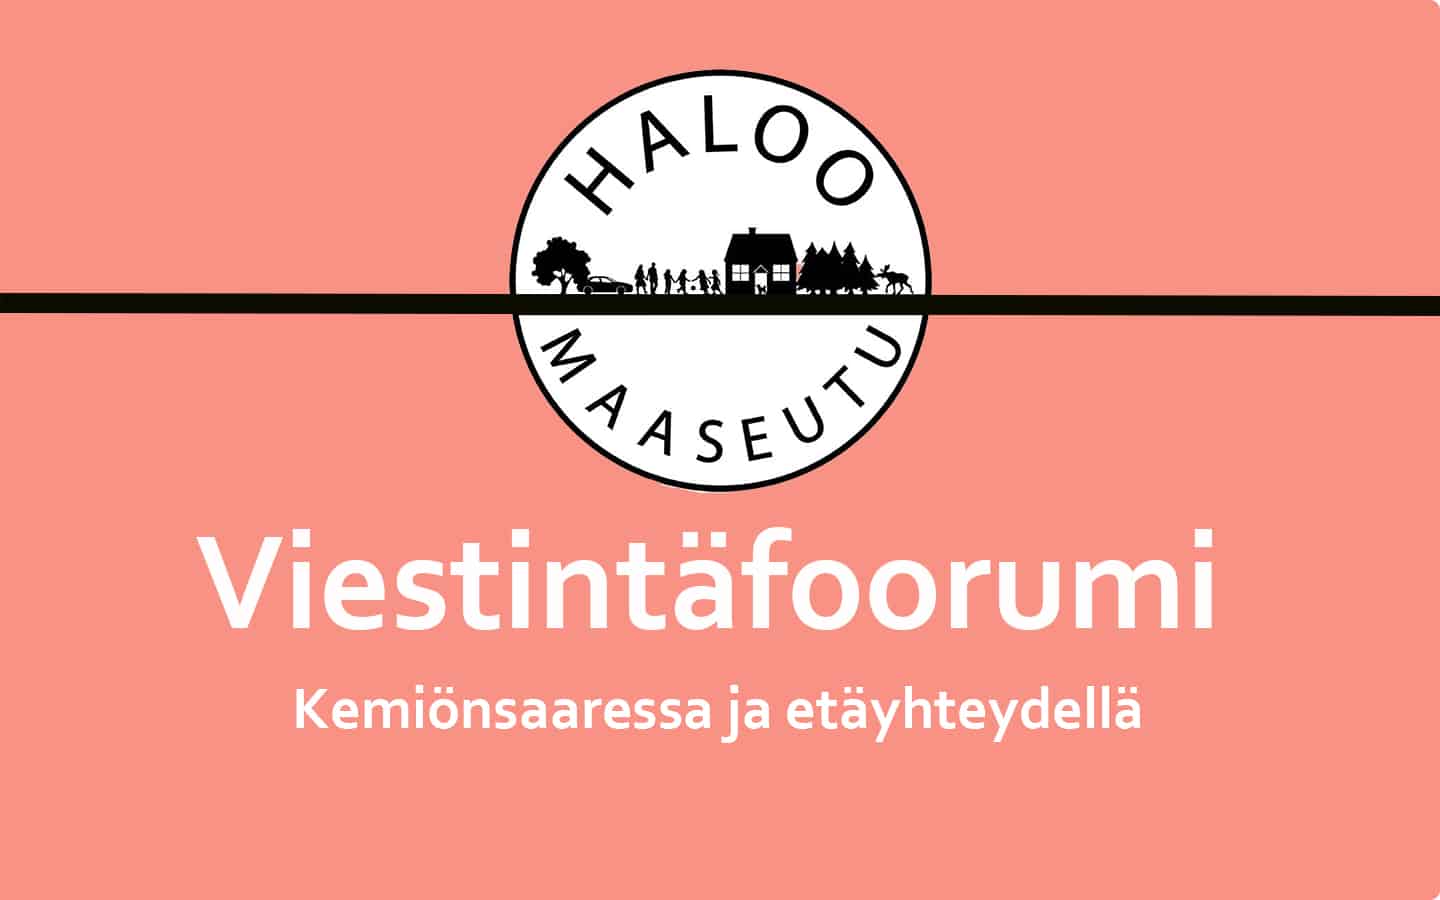 Seuraava Haloo maaseutu! -hankkeen viestintäfoorumi järjestetään Kemiönsaaressa 22.5.